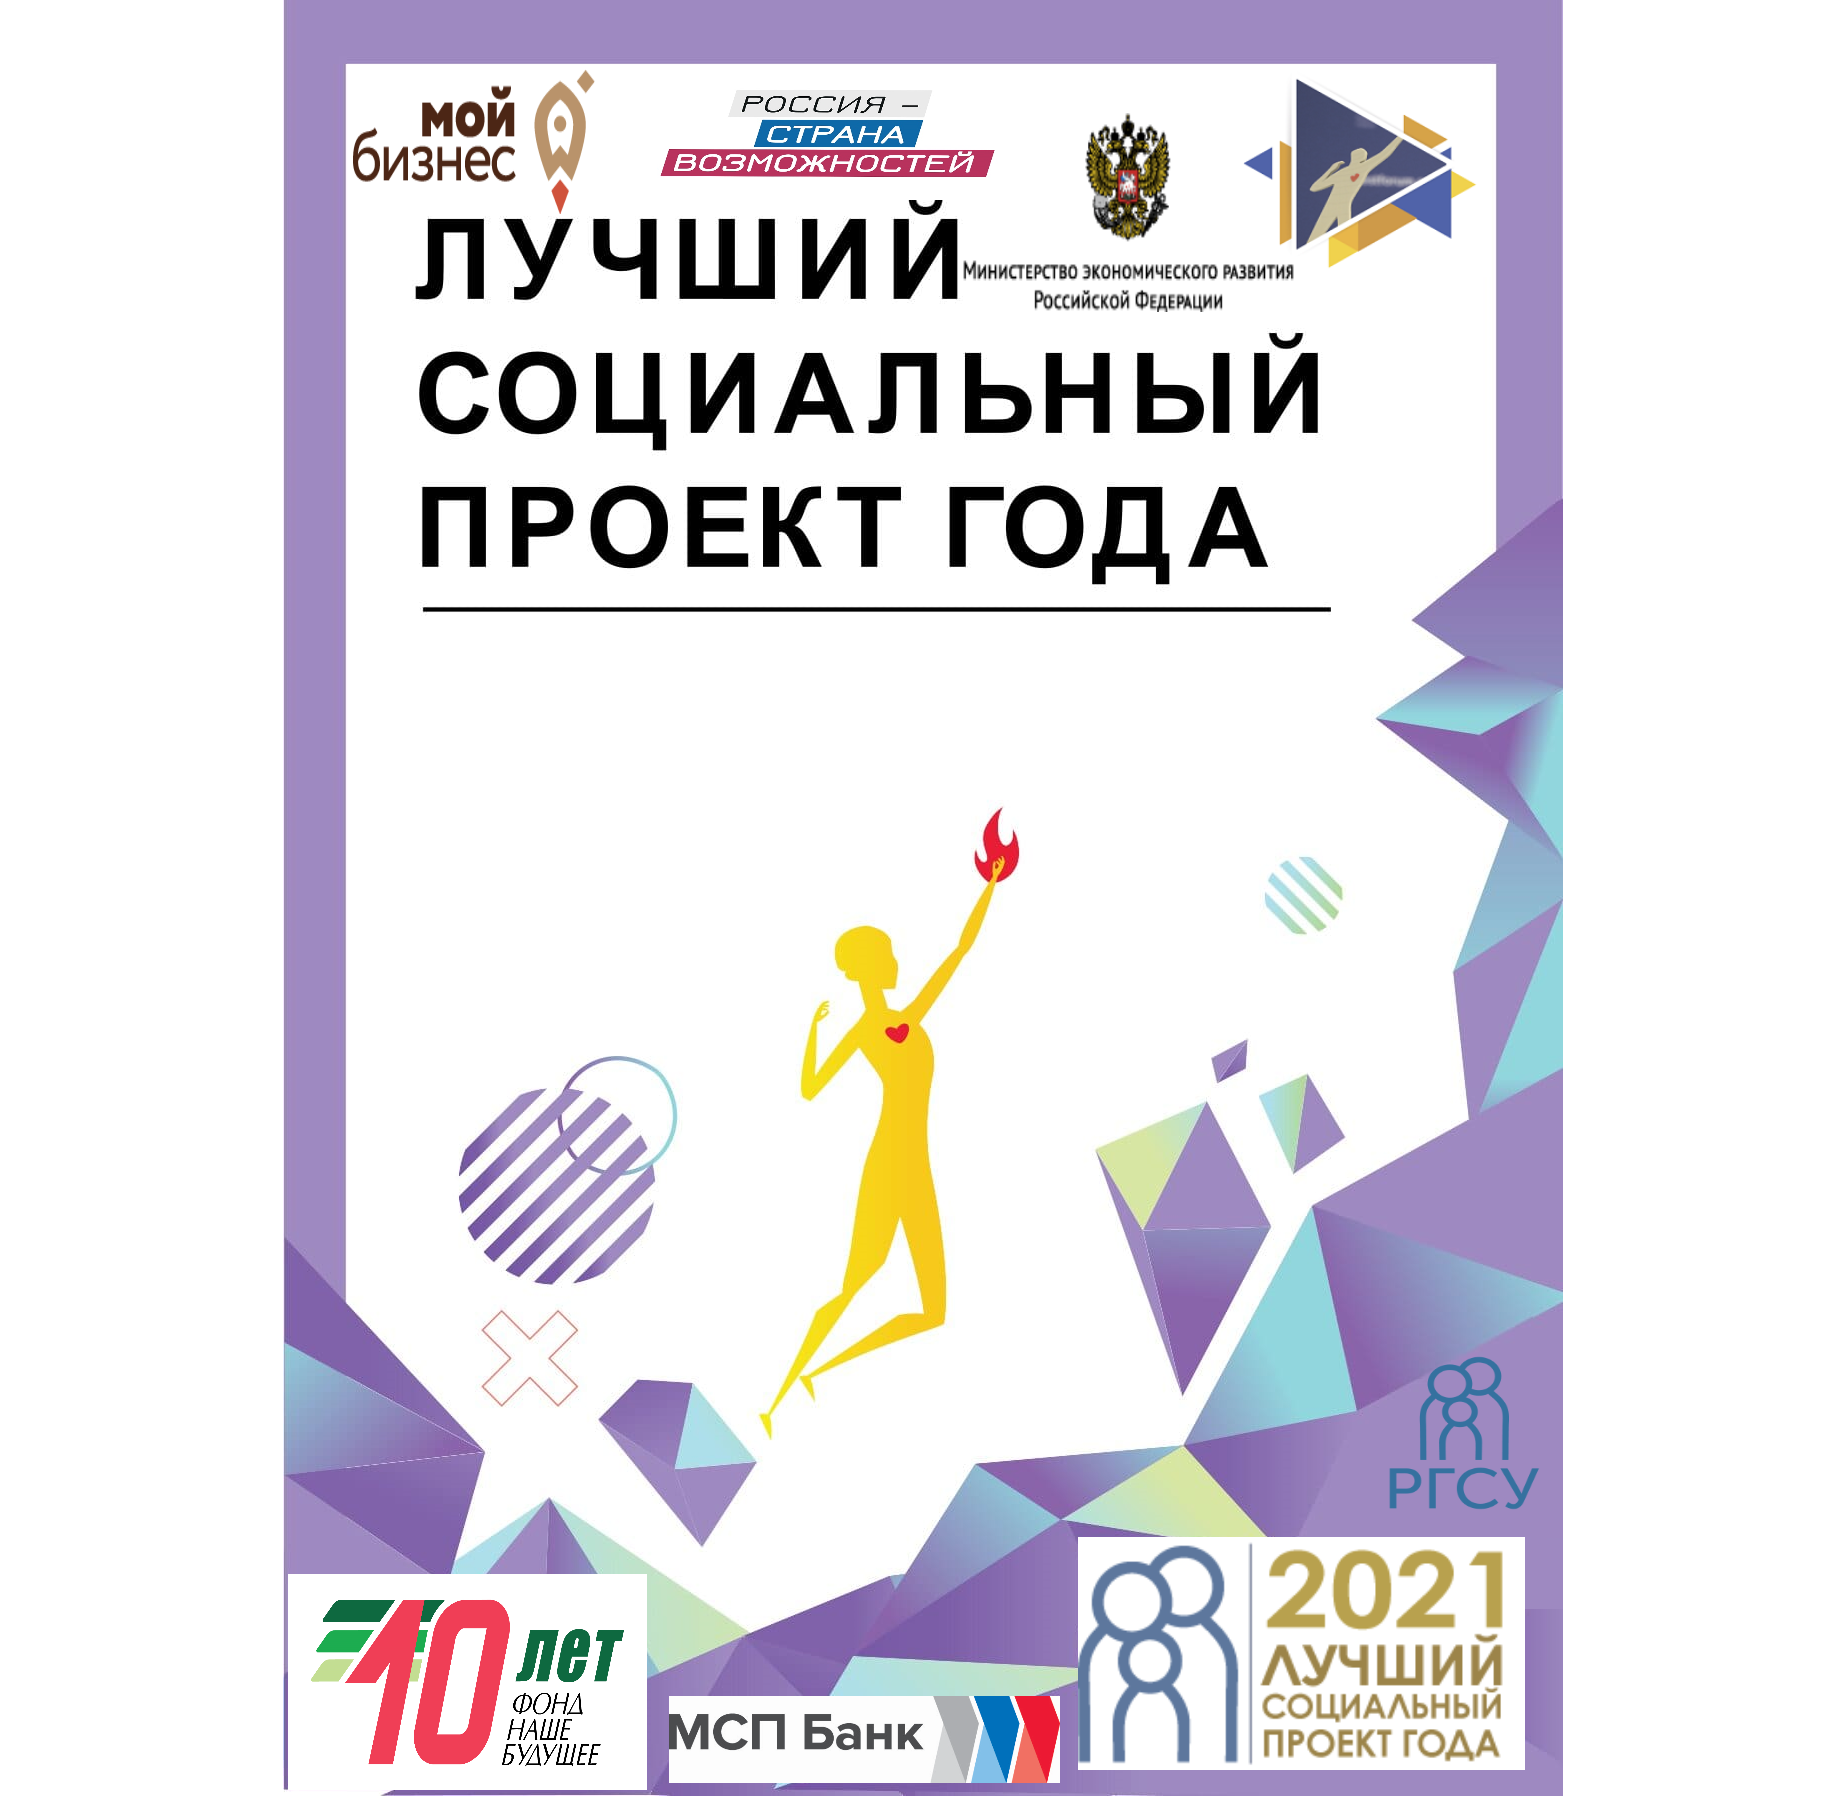 Объявляем прием заявок на участие в региональном этапе Всероссийского конкурса «Лучший социальный проект года — 2021»